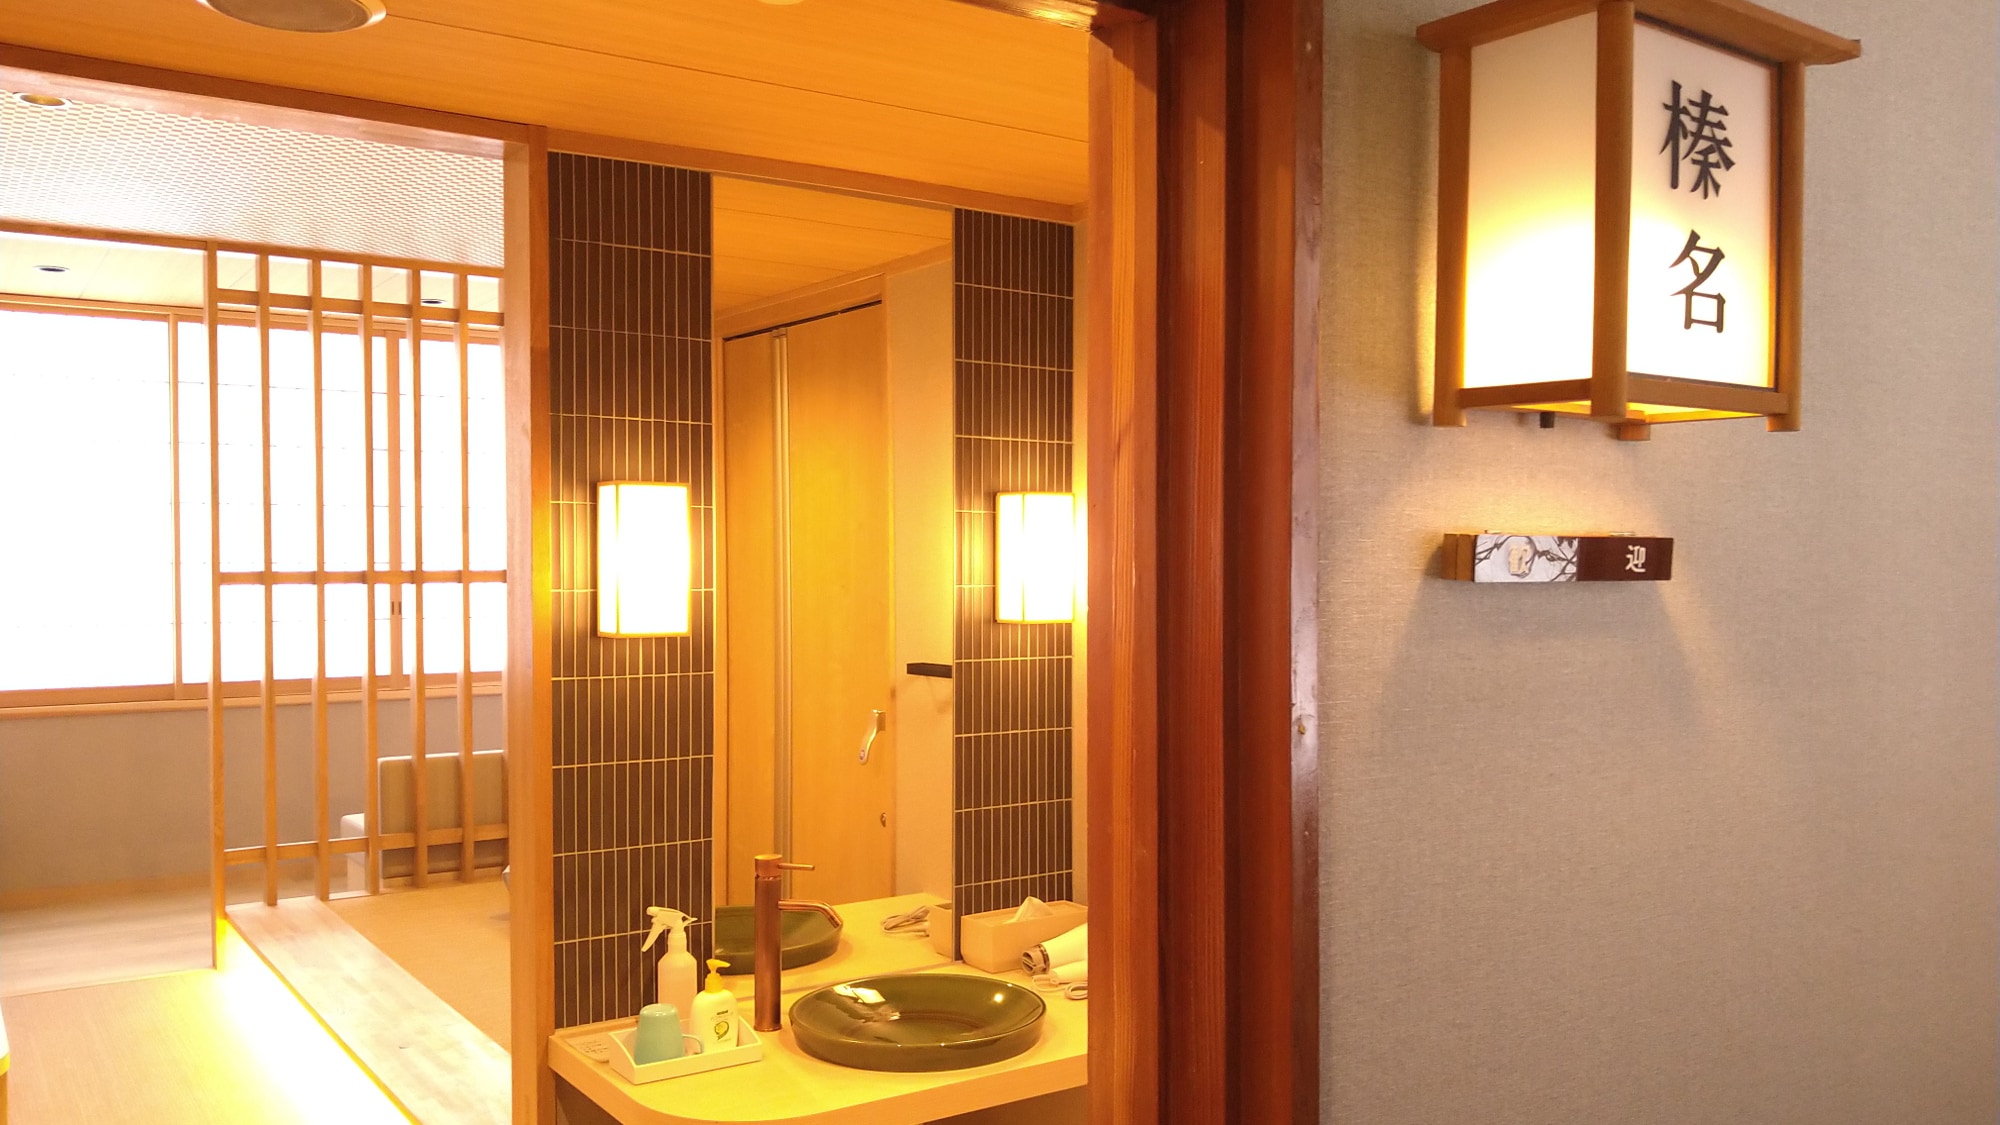 Kamar twin kecil dengan ranjang rendah "Haruna" (pintu masuk)